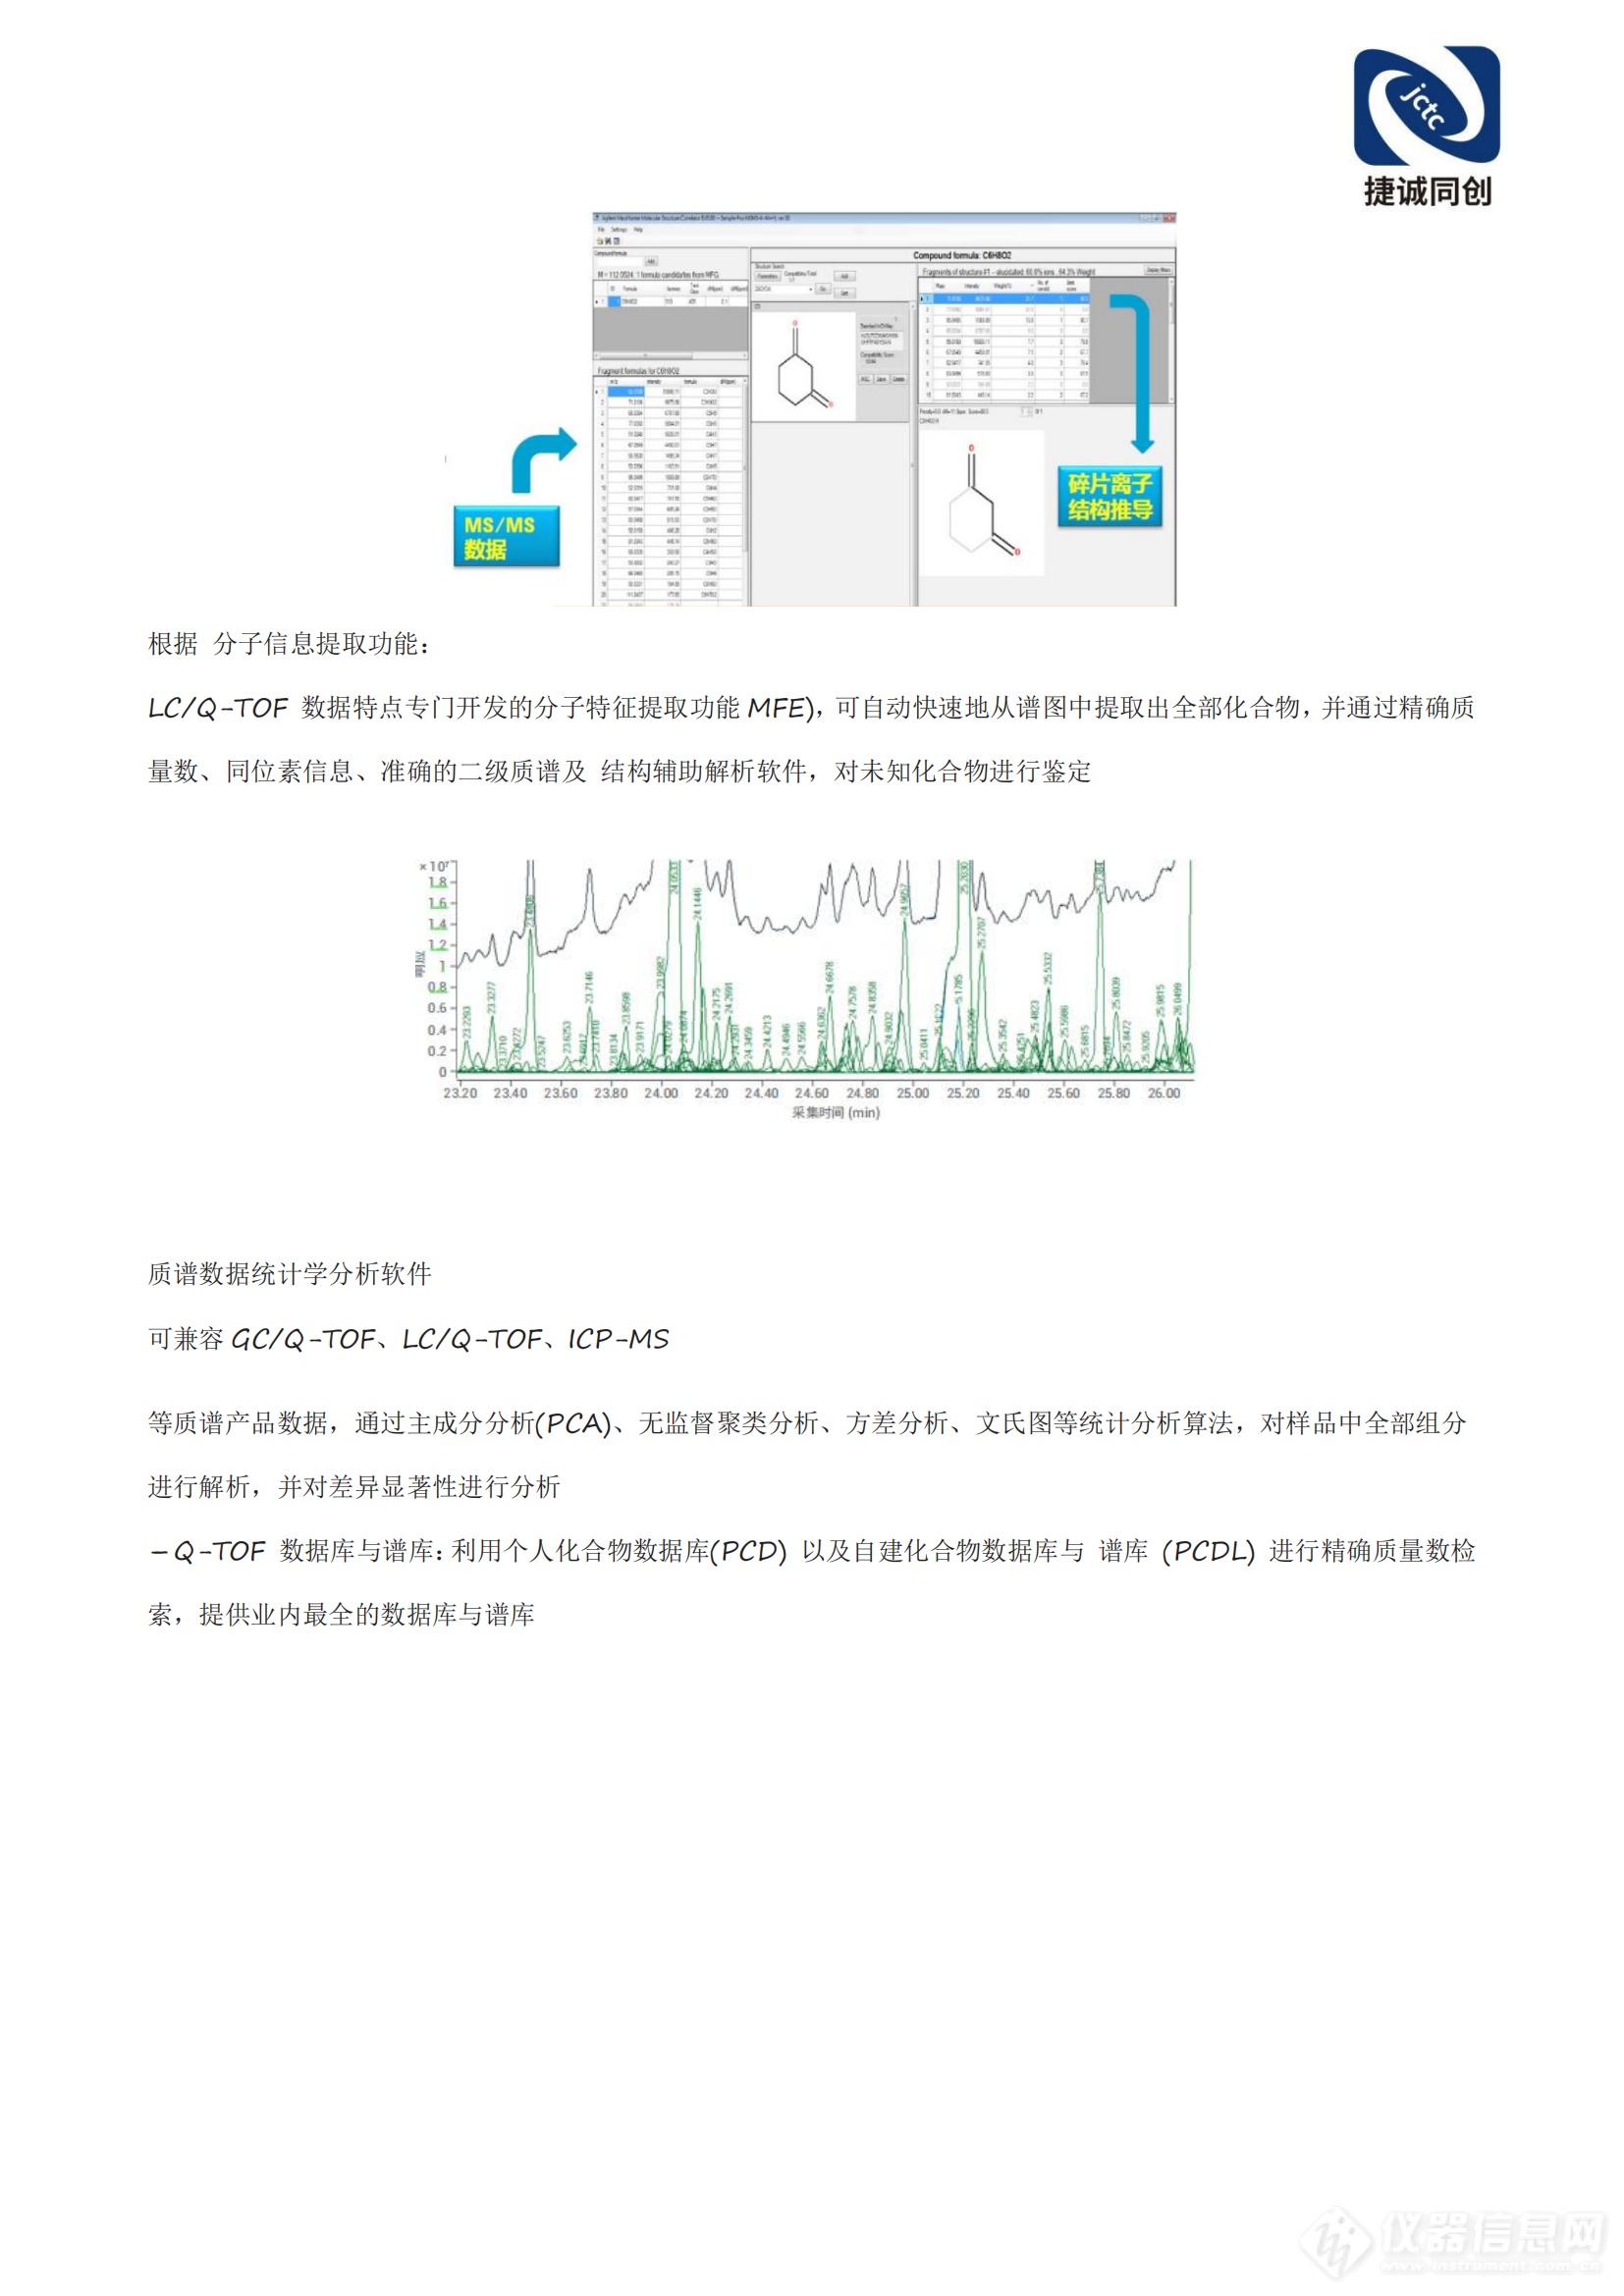 北京捷诚同创科技有限公司锂电池解决方案(2)_11.png